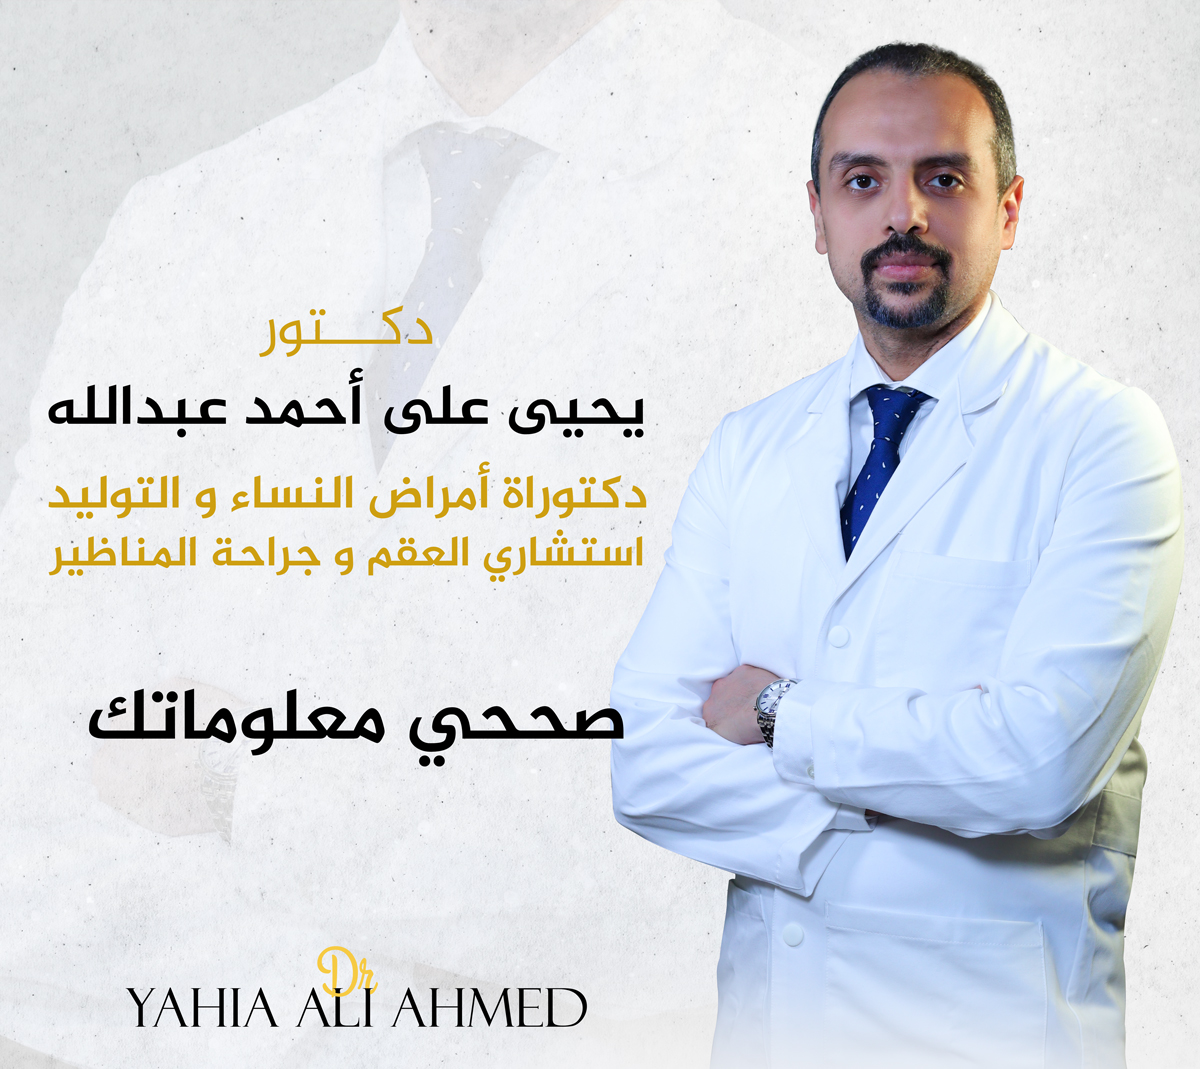 صححي معلوماتك - د. يحيي علي أحمد